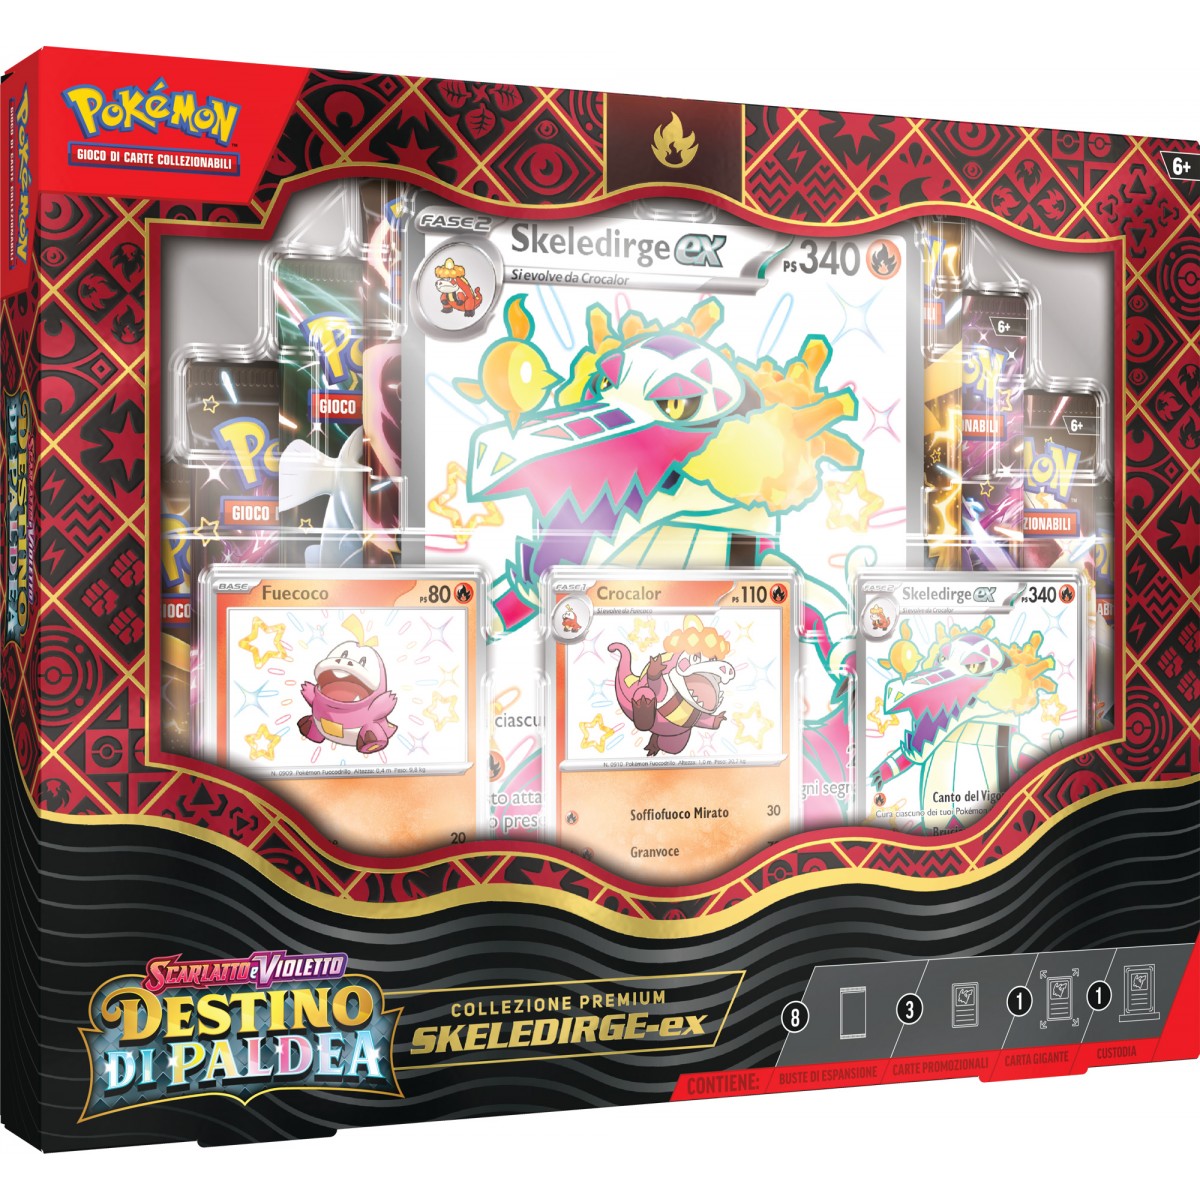 Pokémon Scarlatto & Violetto Destino di Paldea Collezione Premium Skeledirge ex (IT)